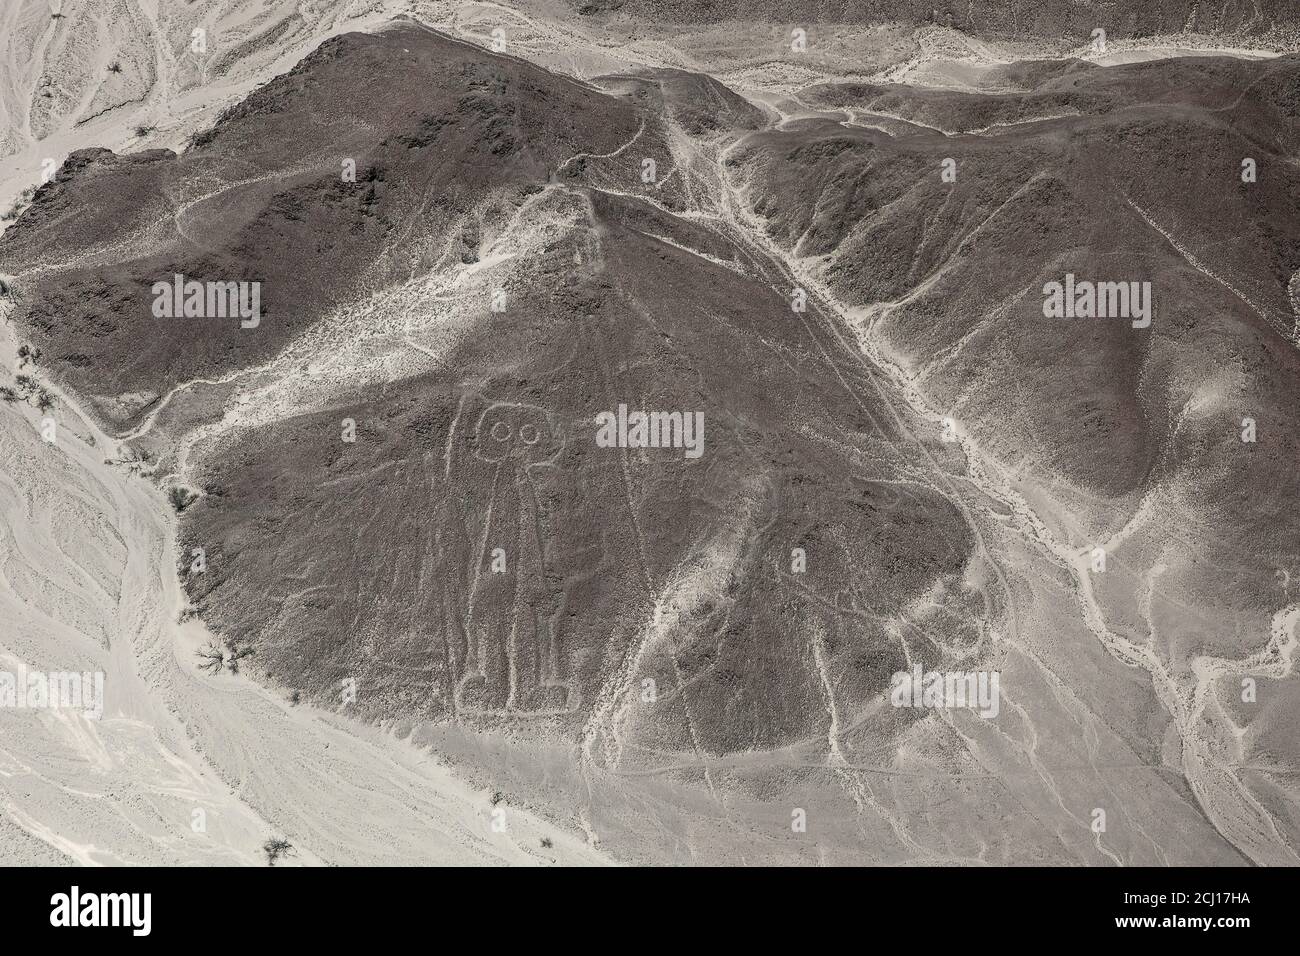 L'astronaute ou l'homme Owl ou le geoglyphe géant Nazca, Pérou Banque D'Images